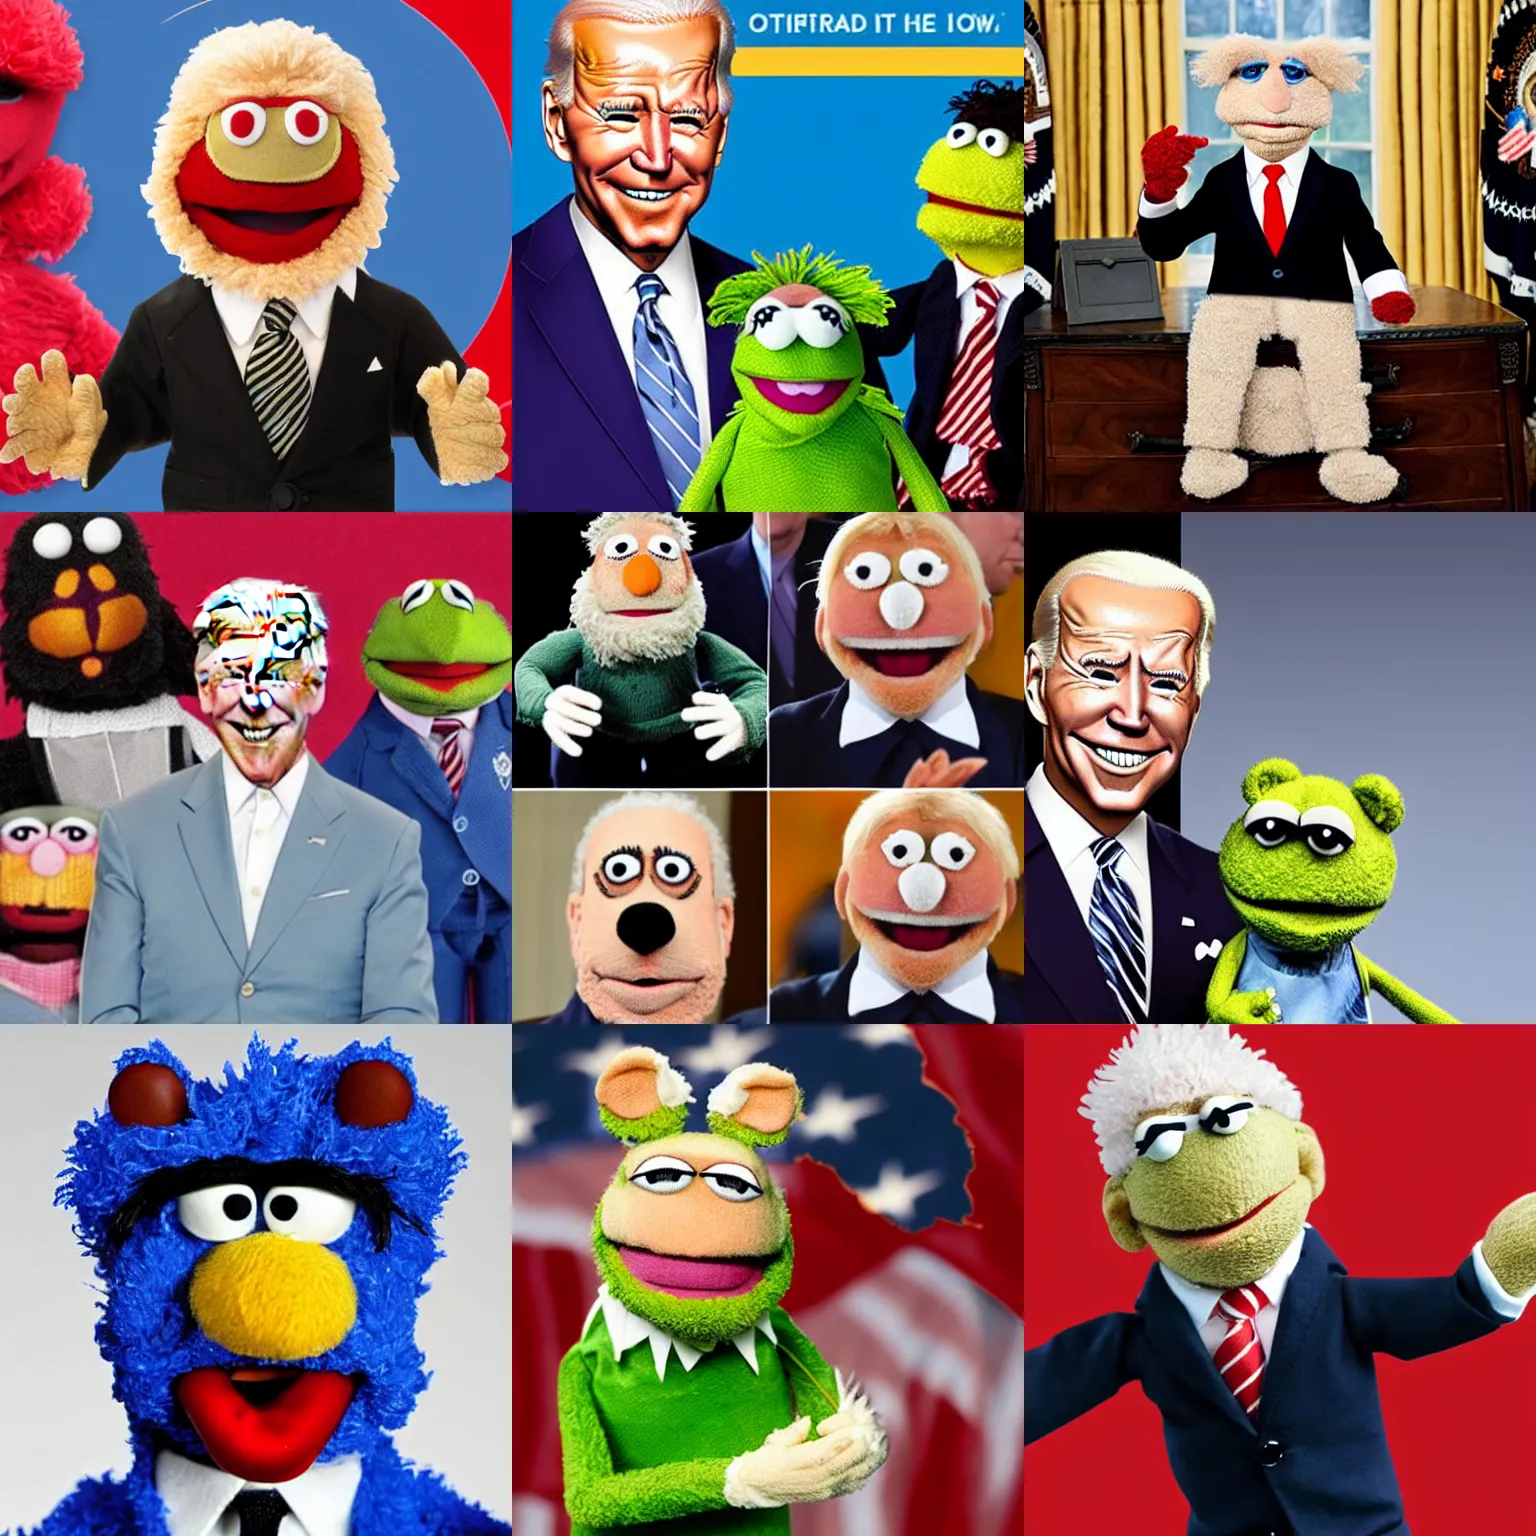 Prompt: Biden as a muppet